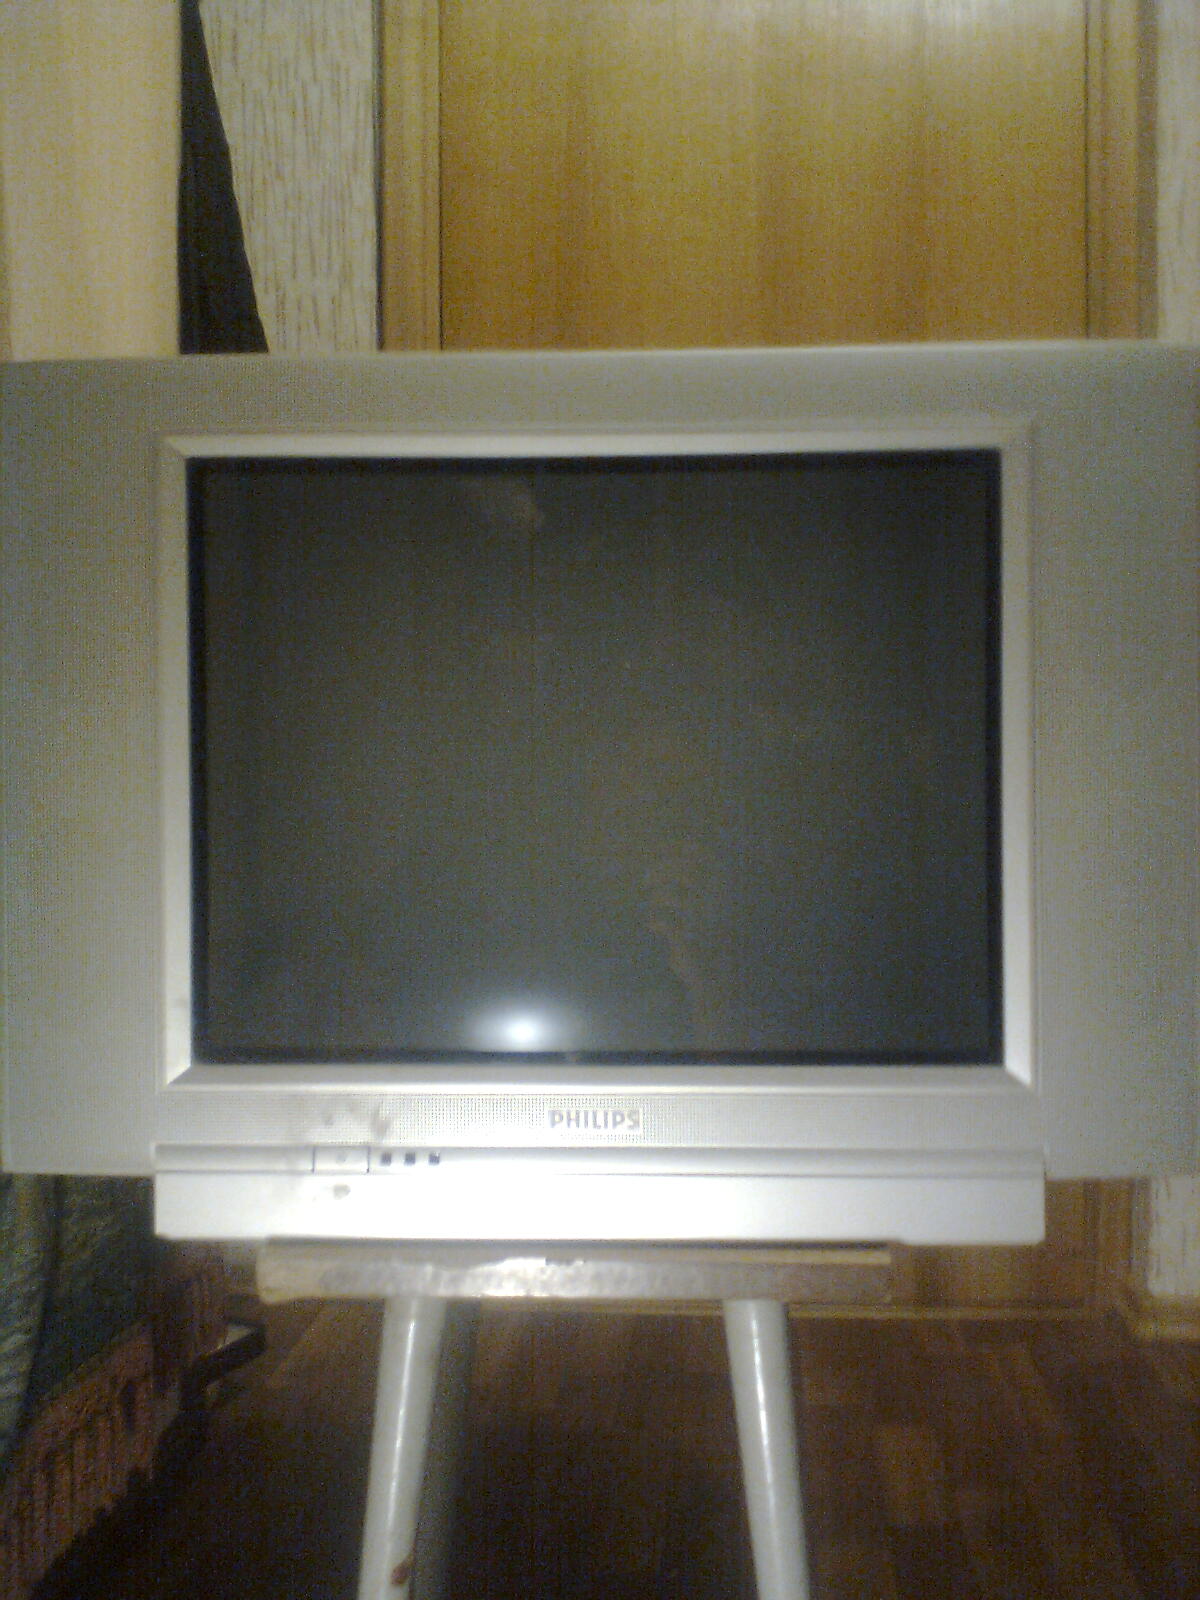 Старый телевизор Филипс 2005-2008 года